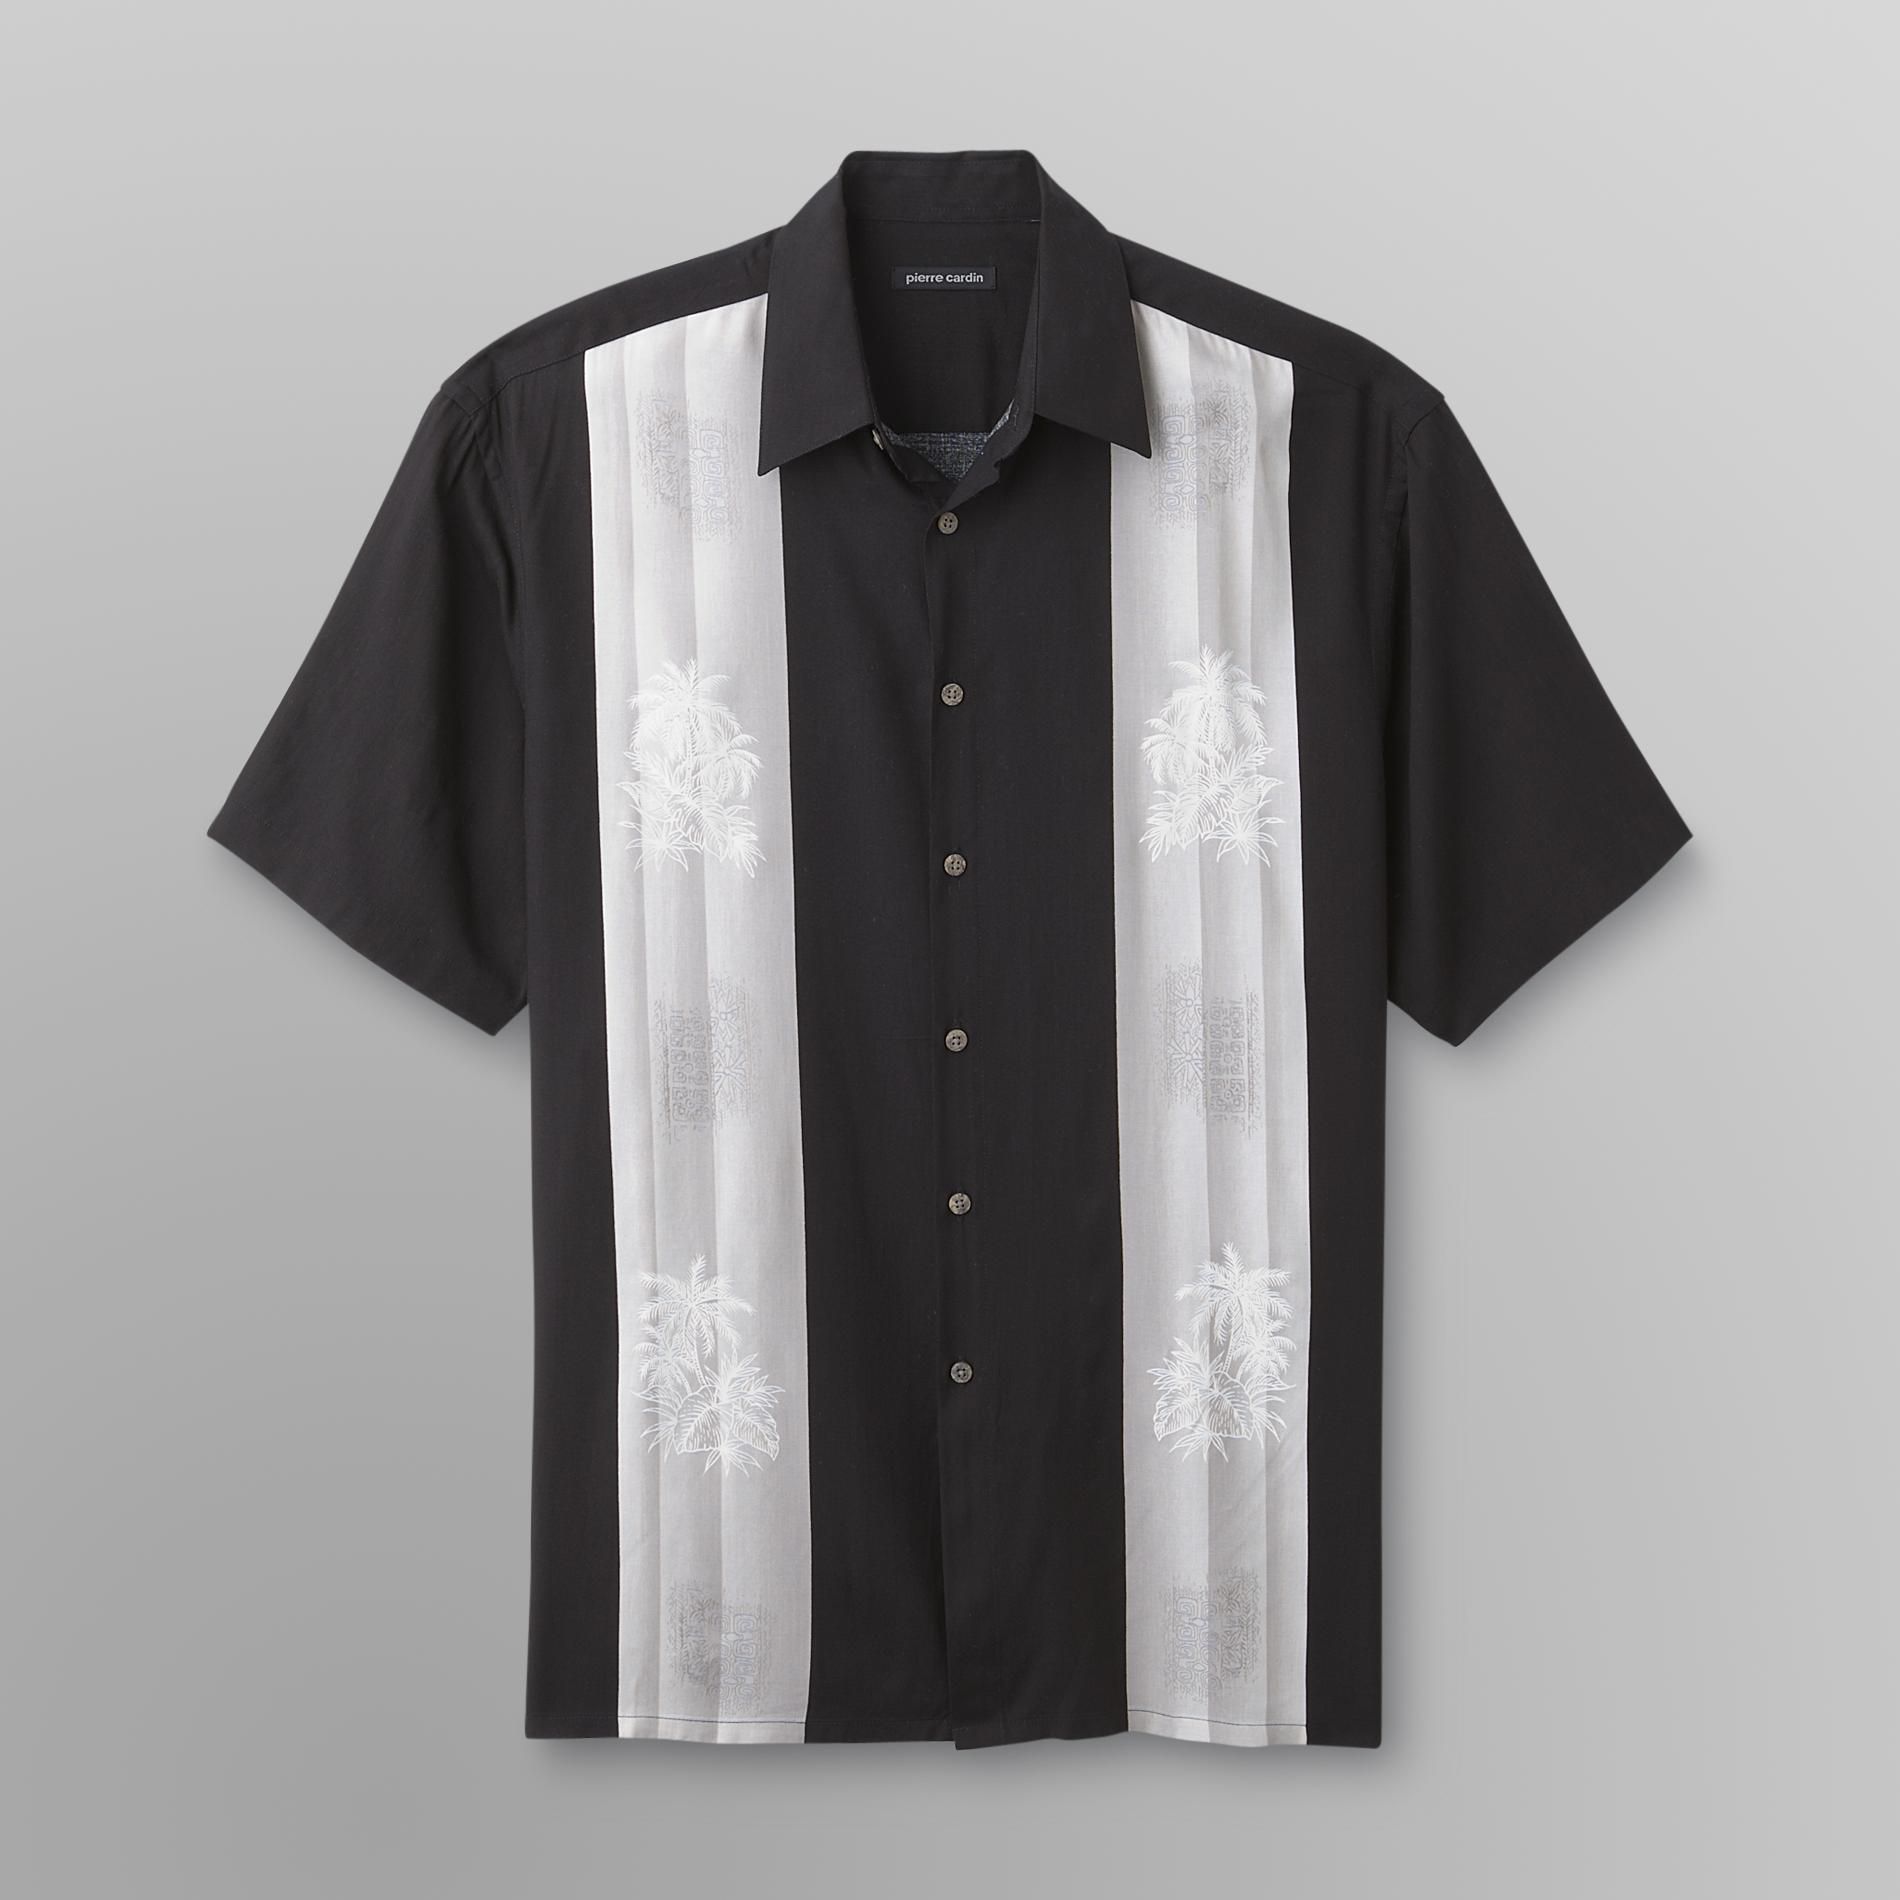 Pierre Cardin Men's Tropical Sport Shirt - Colorblock & Palm